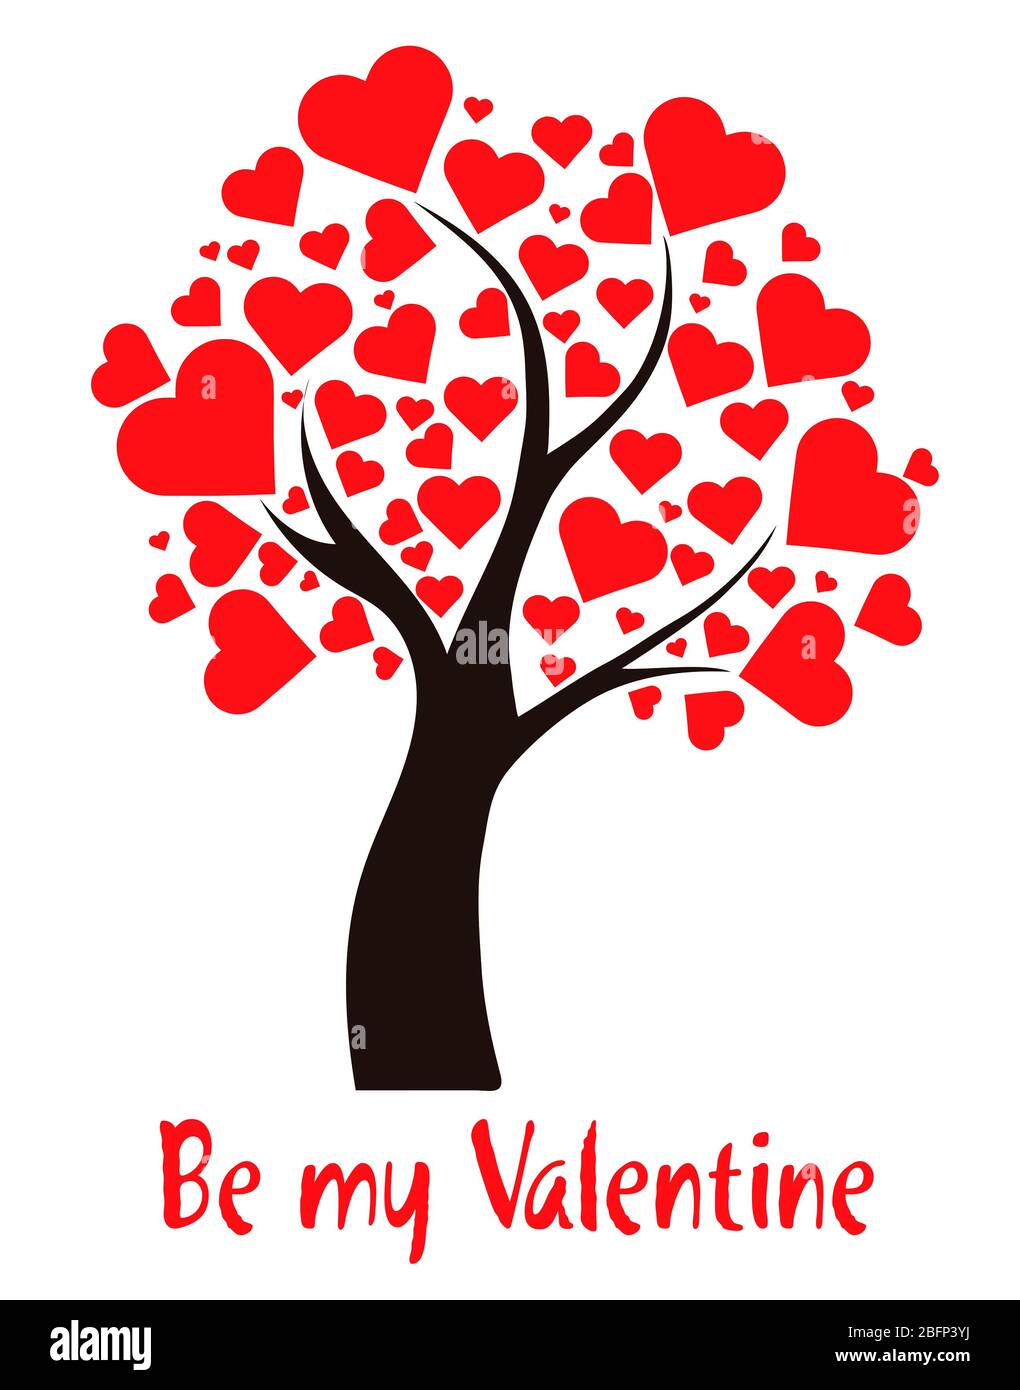 Illustrationsbaum mit Herzen und Text sei mein Valentinstag Stockfoto